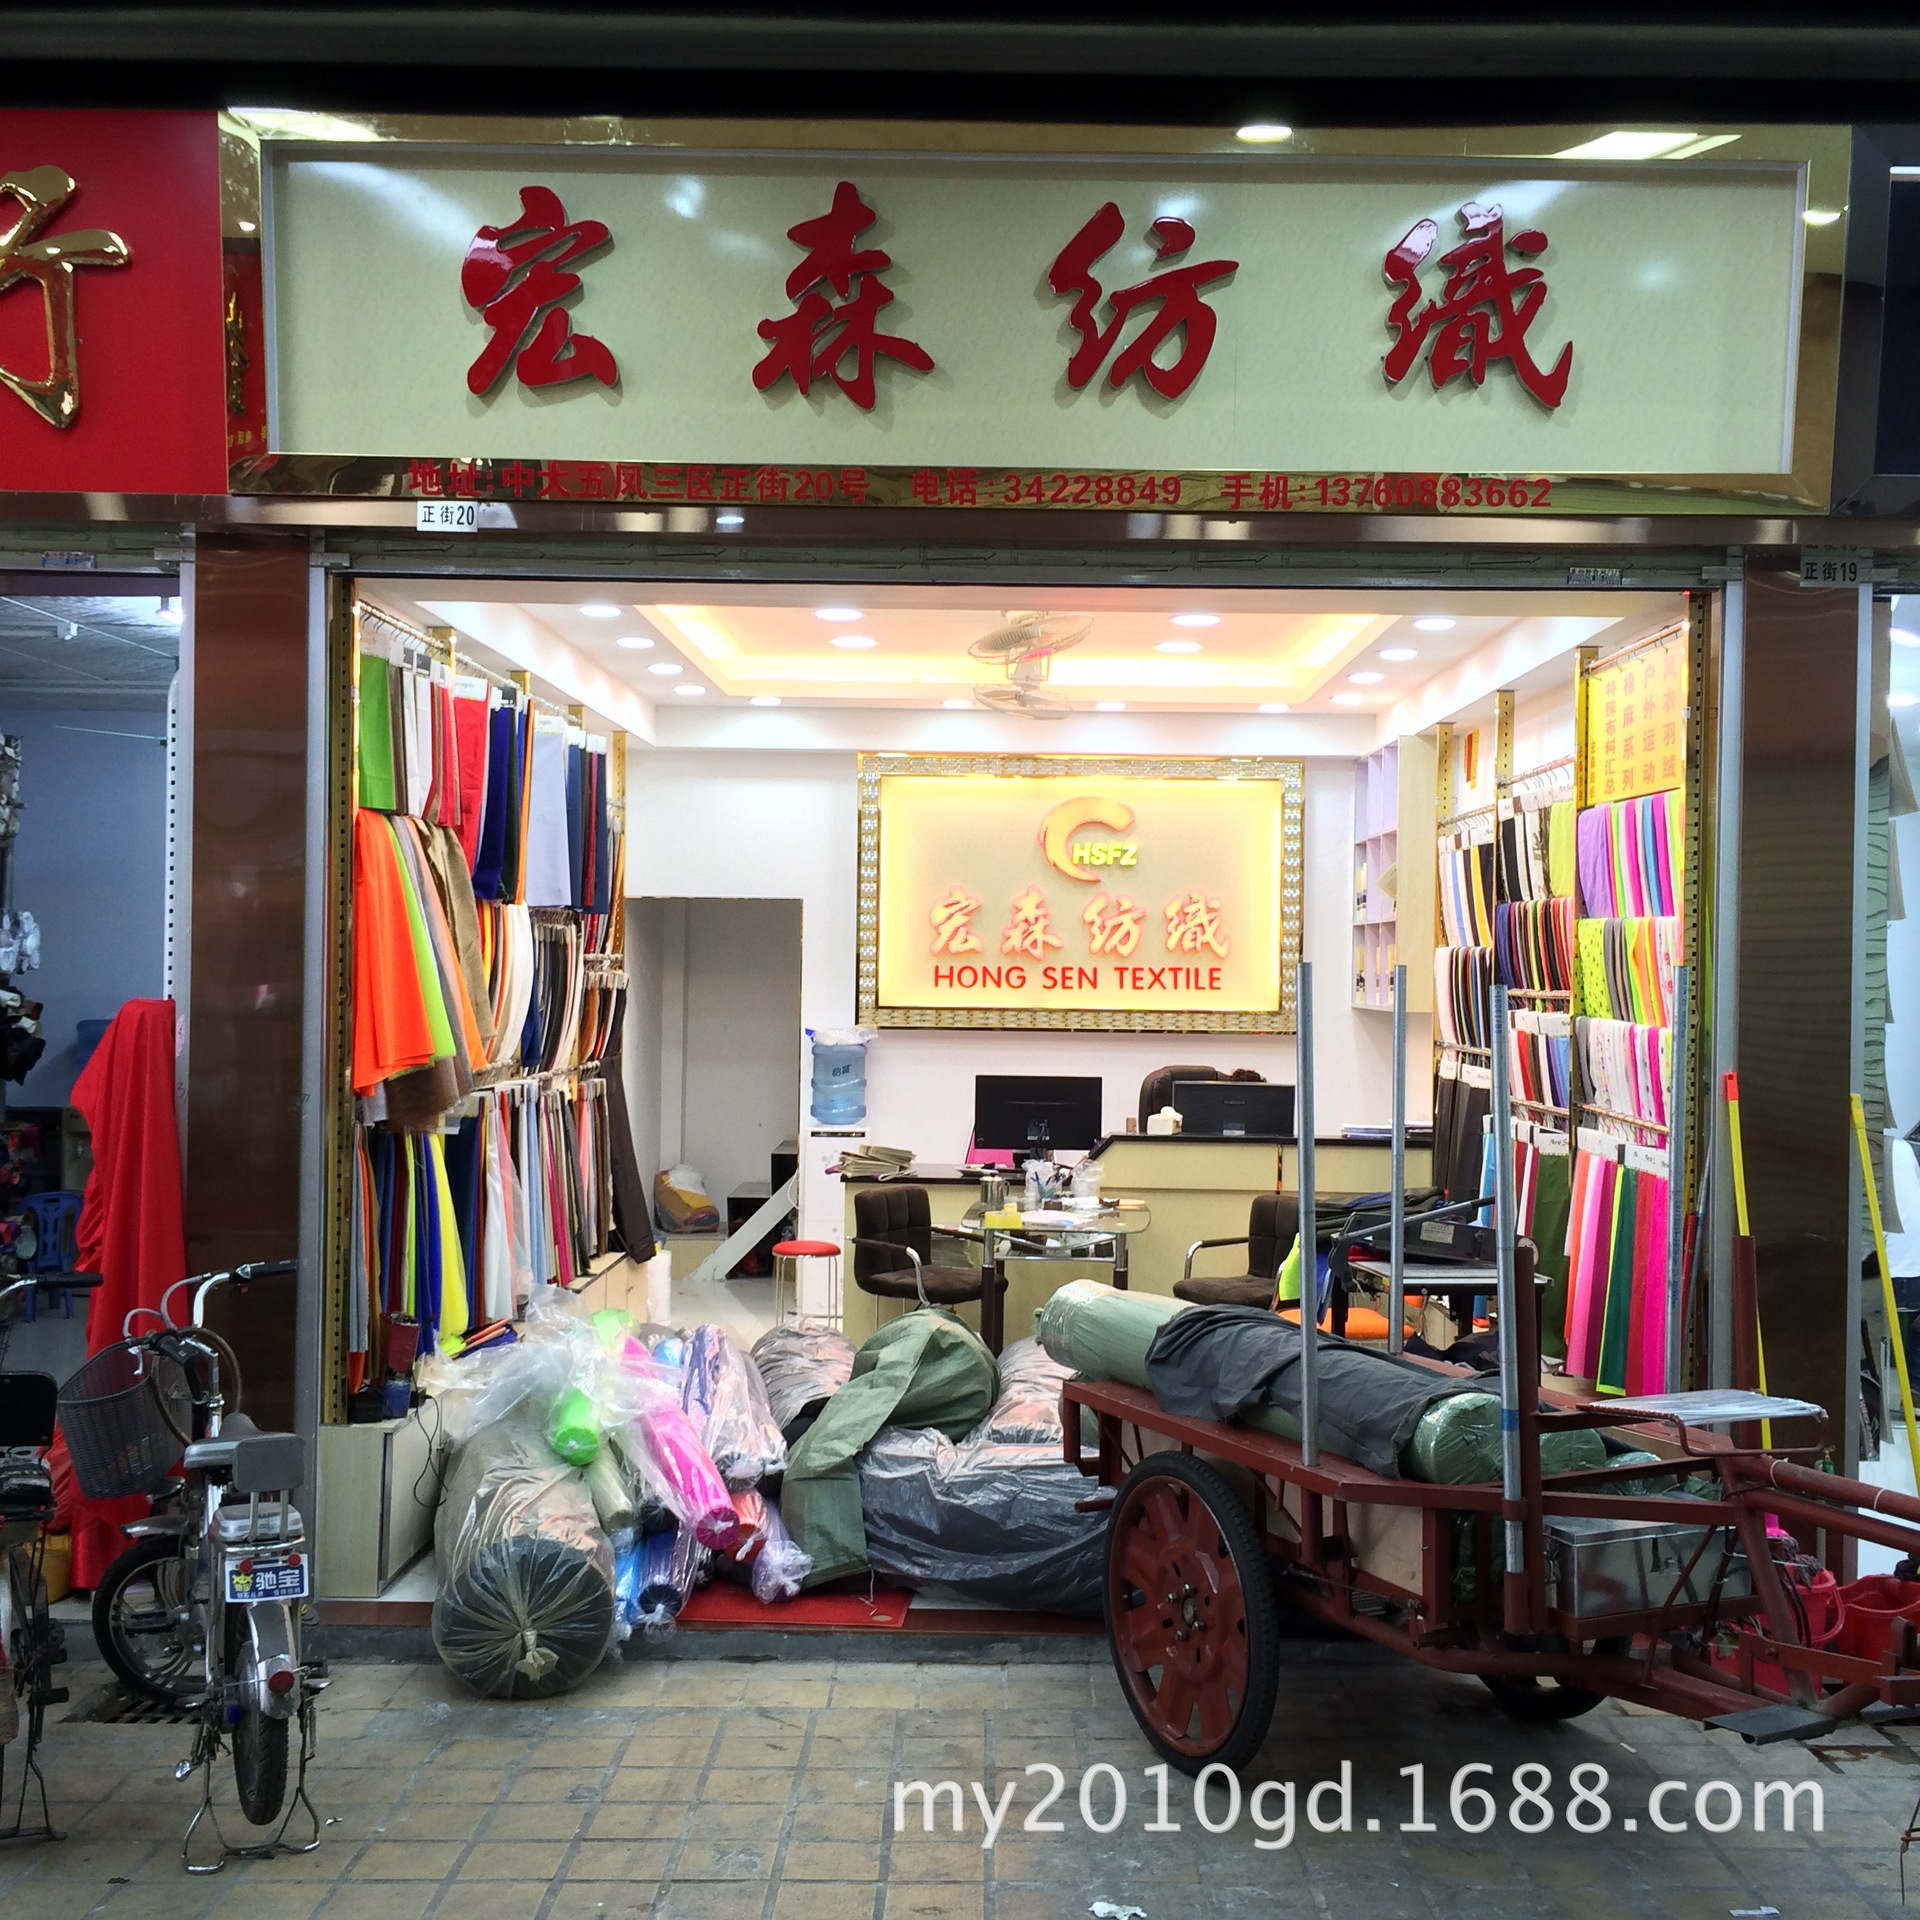 广州宏森纺织有限公司 实体店(中大旗舰店)位于广州中大布料